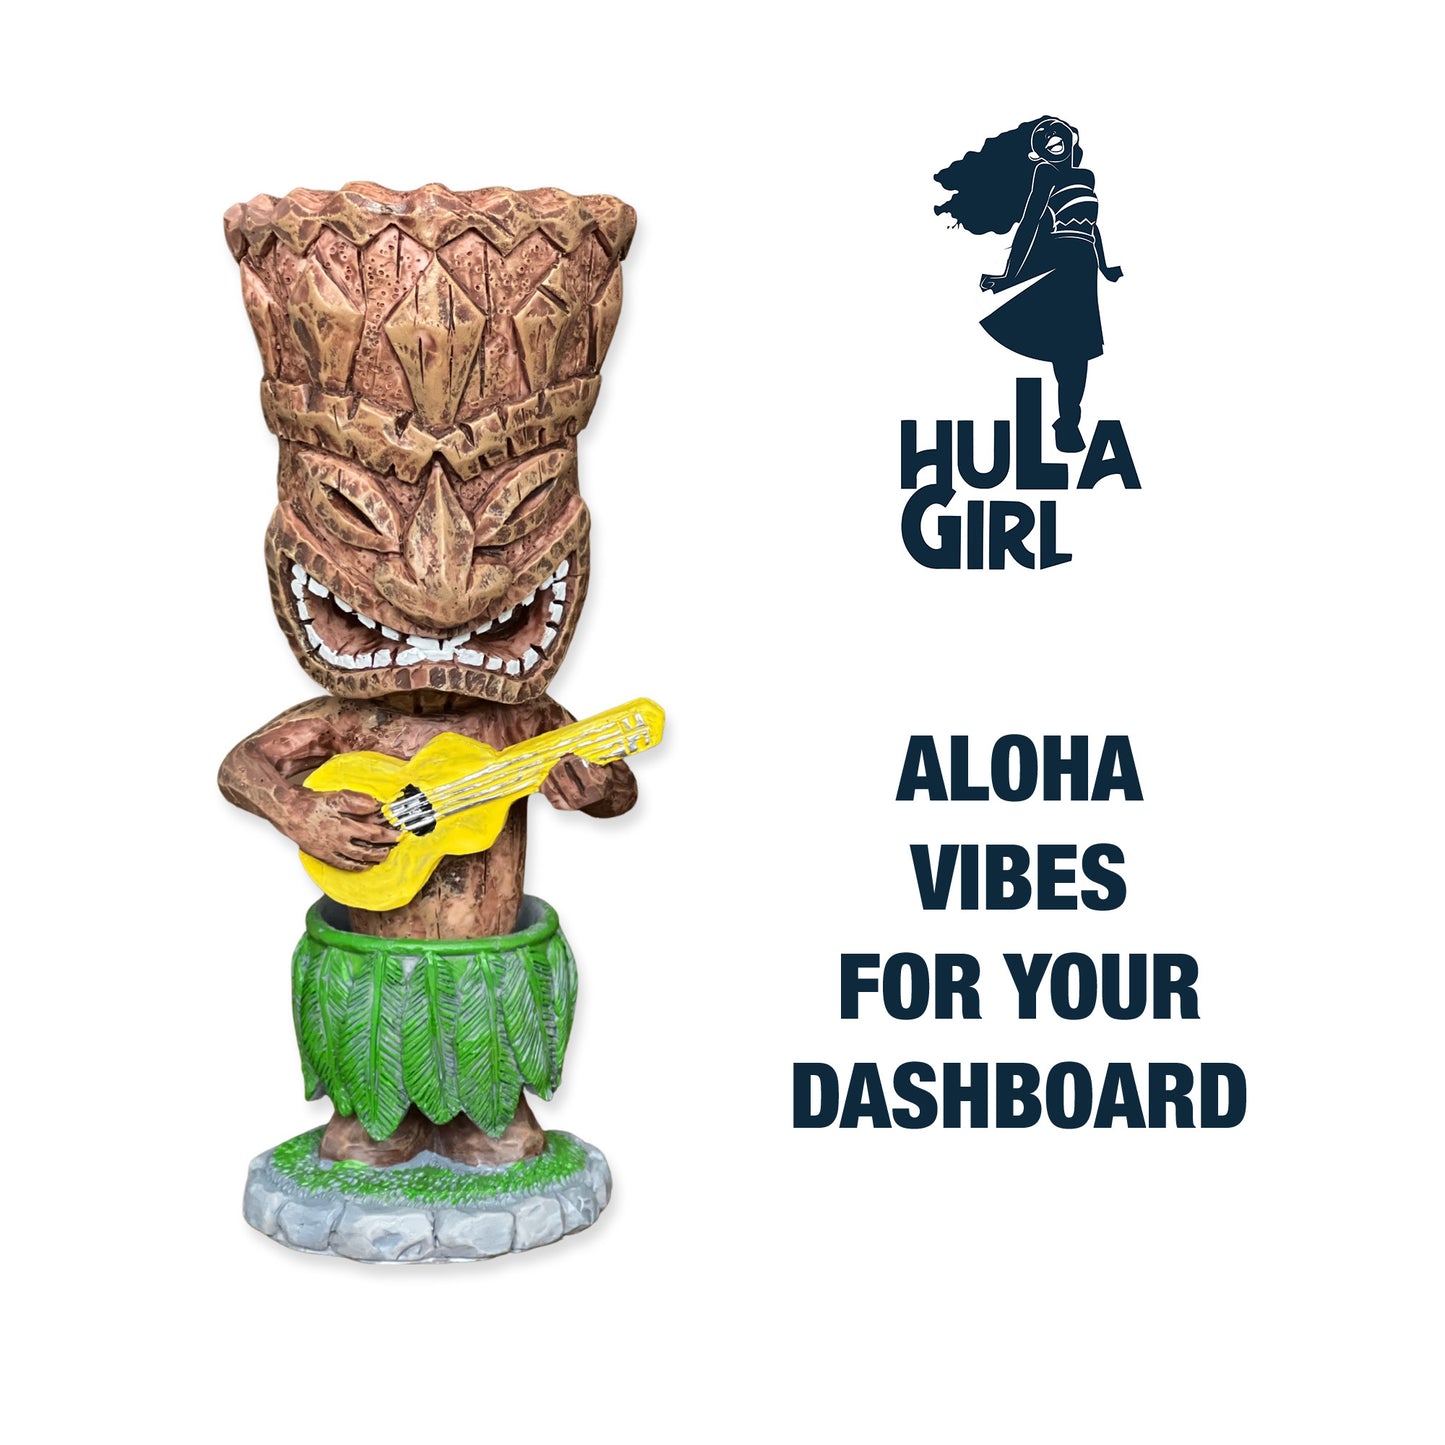 Hawaiian Tiki from Hula Girl - Aloha vibes for your dashboard